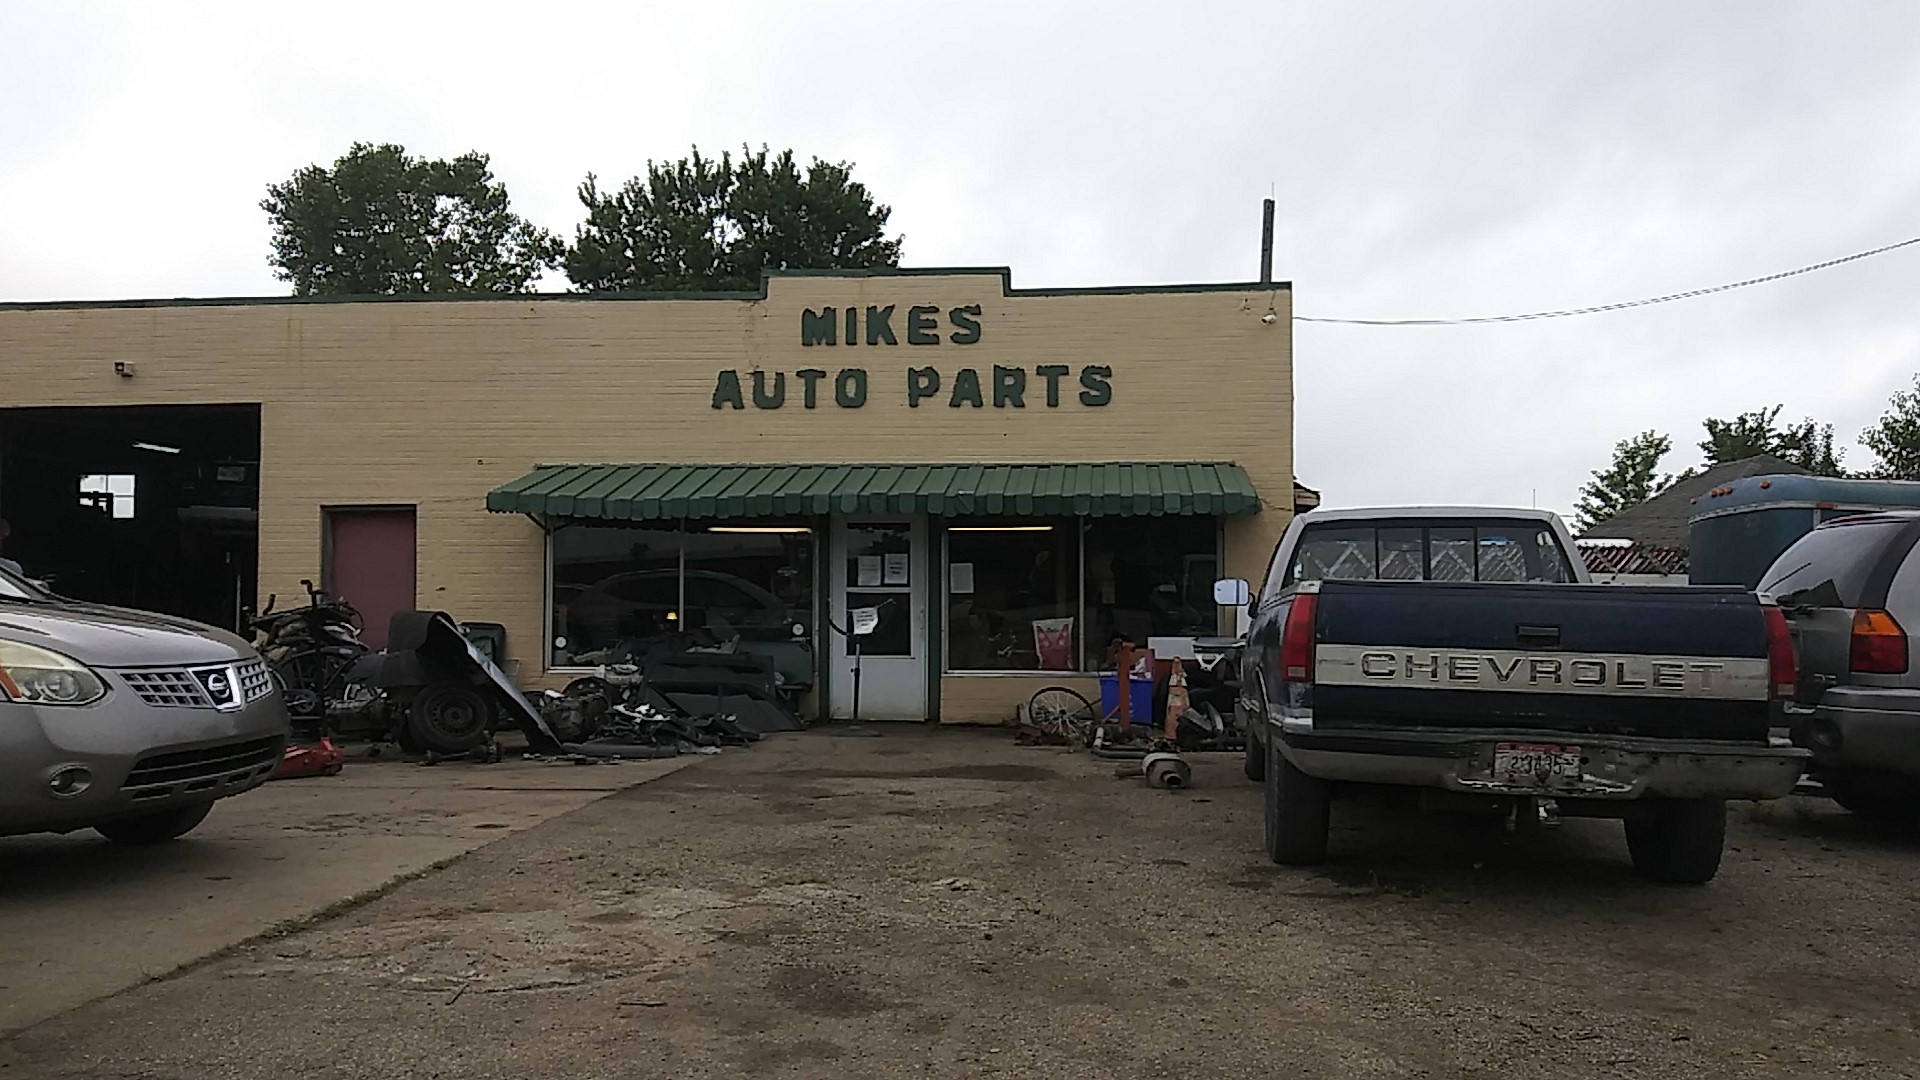 Mike's Auto Parts